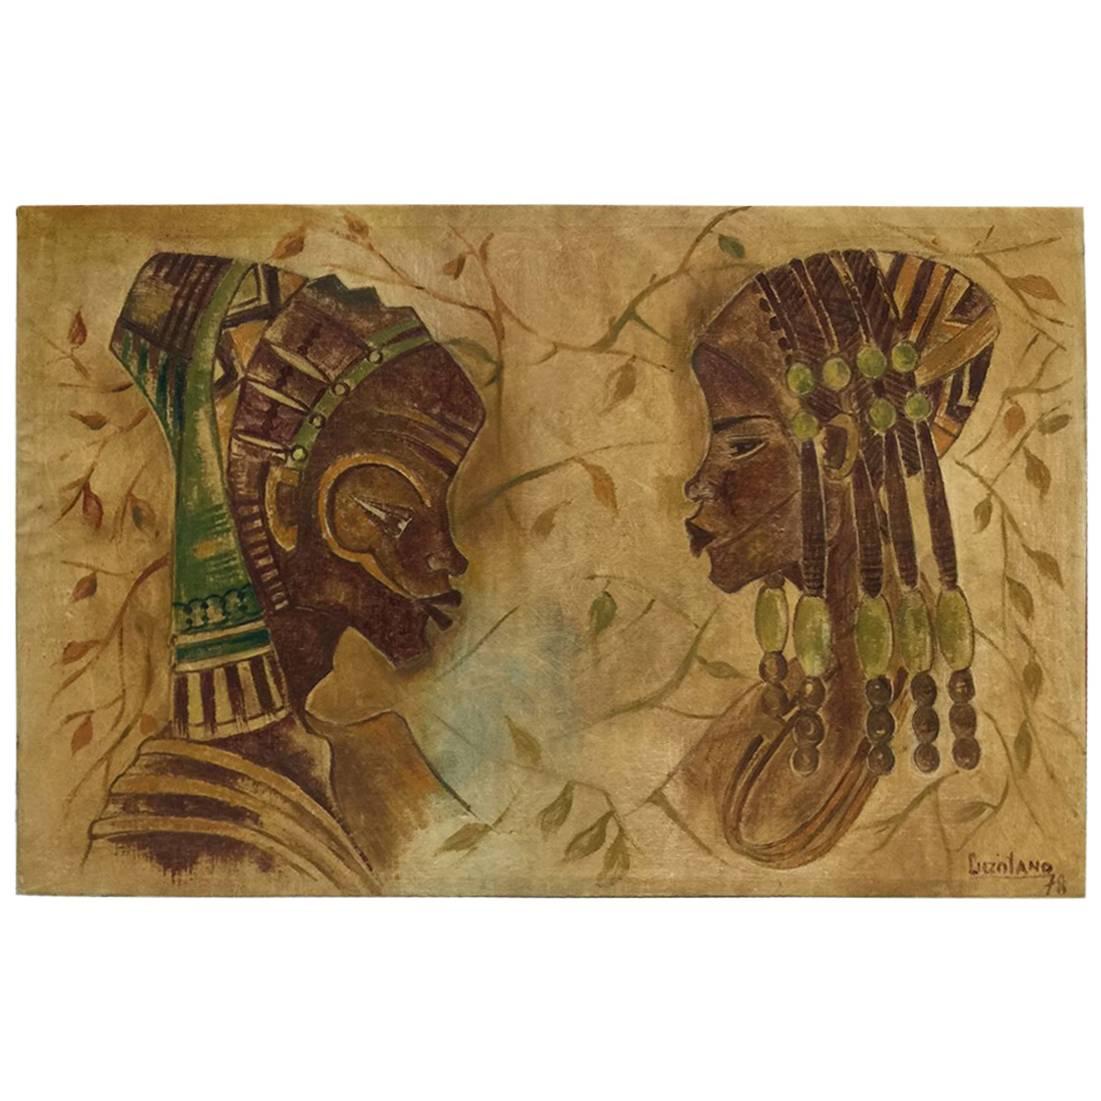 Art africain de Luzolano, peinture à l'huile, 1978